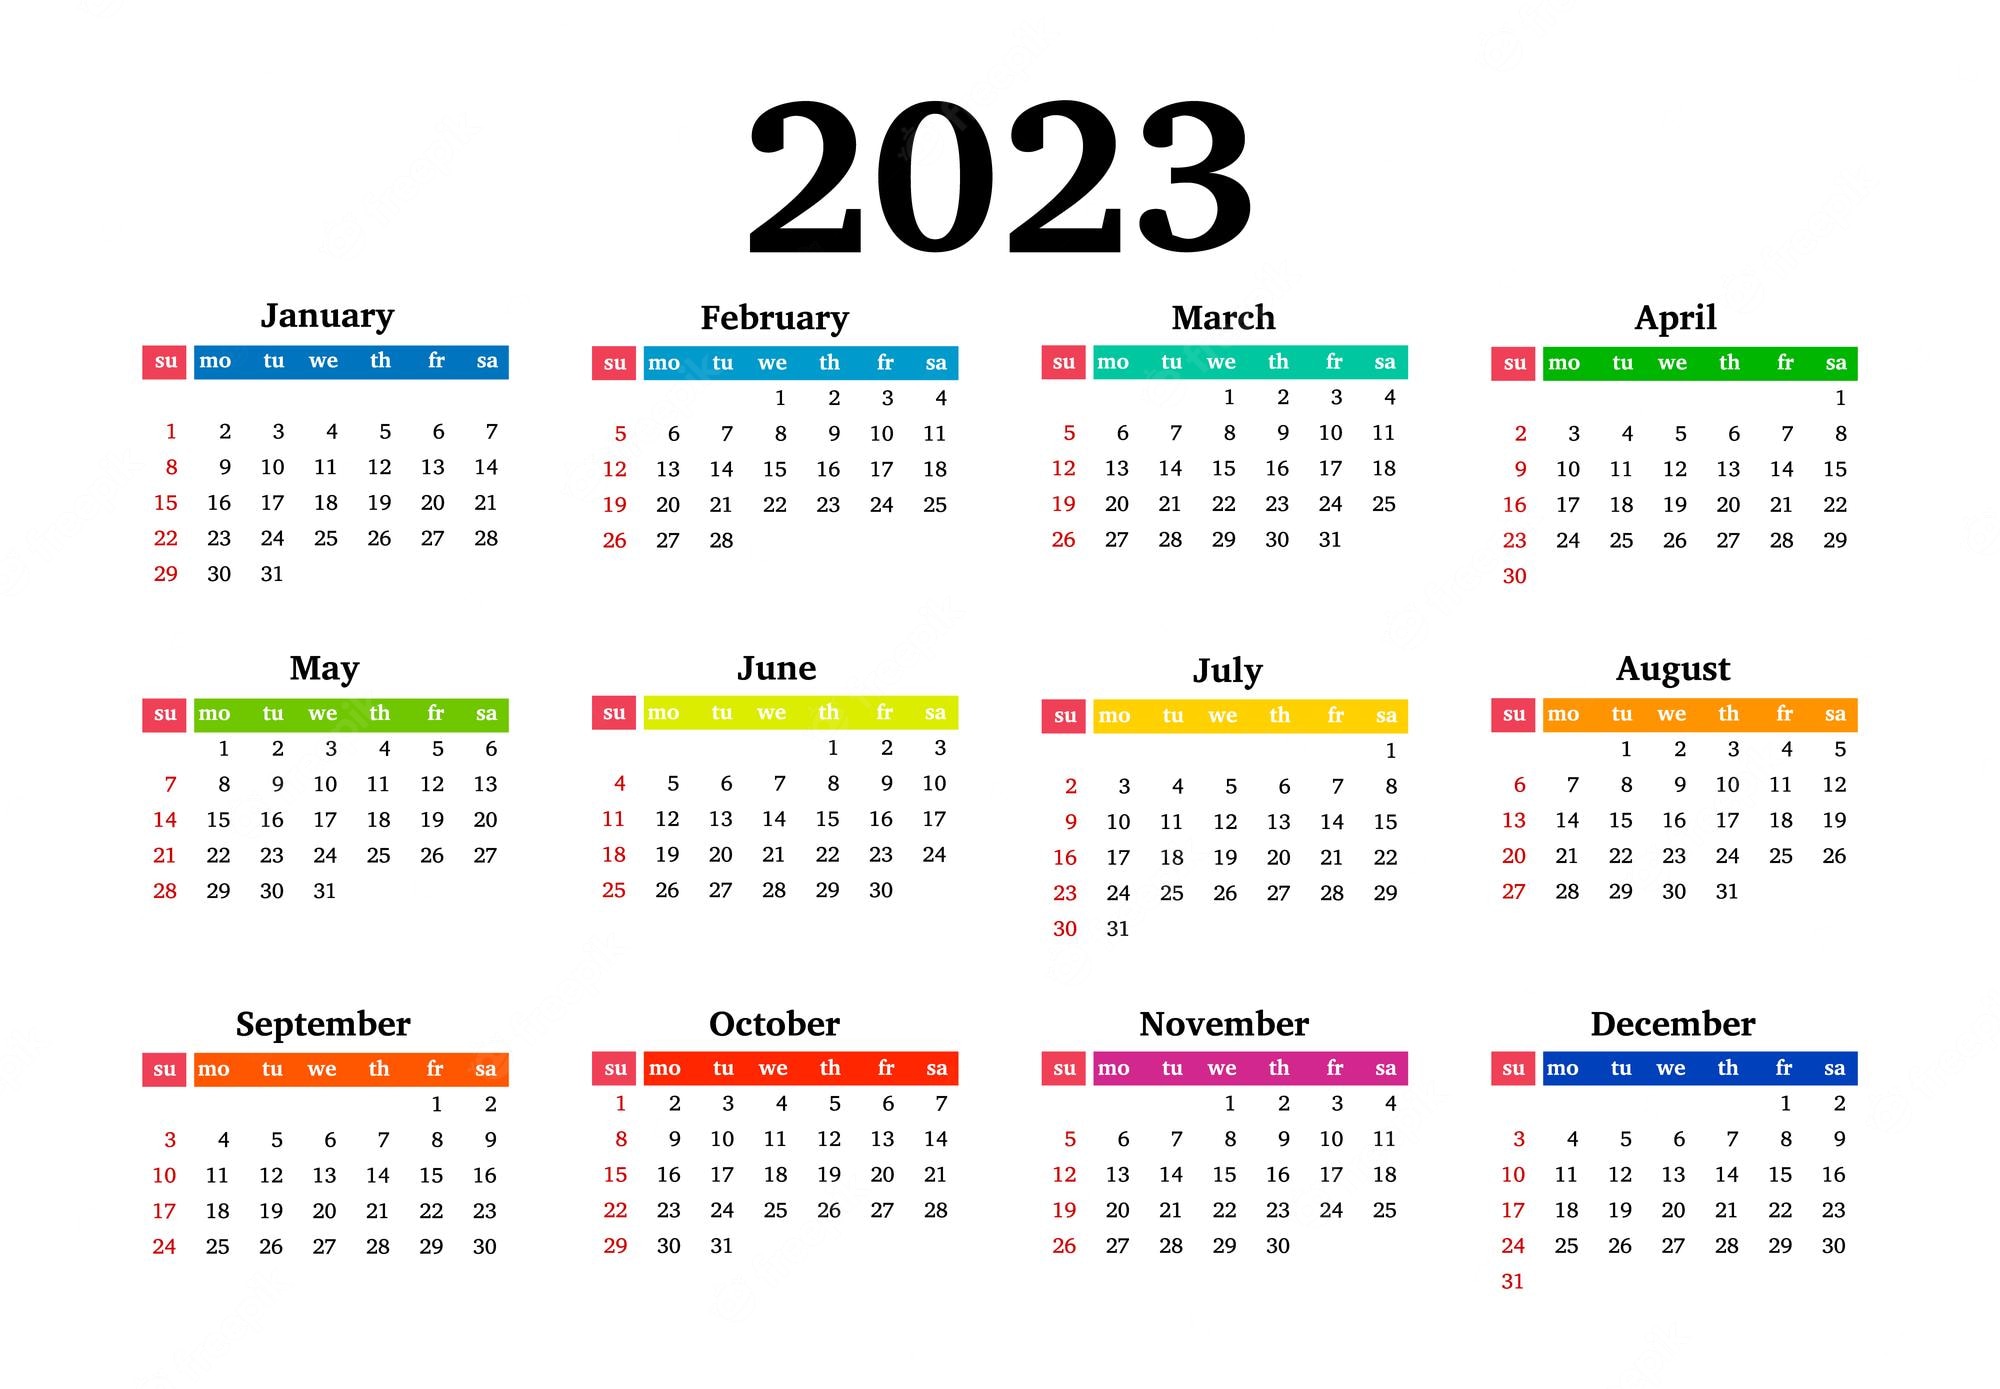 Calendar 2023 Image. Free Vectors, & PSD